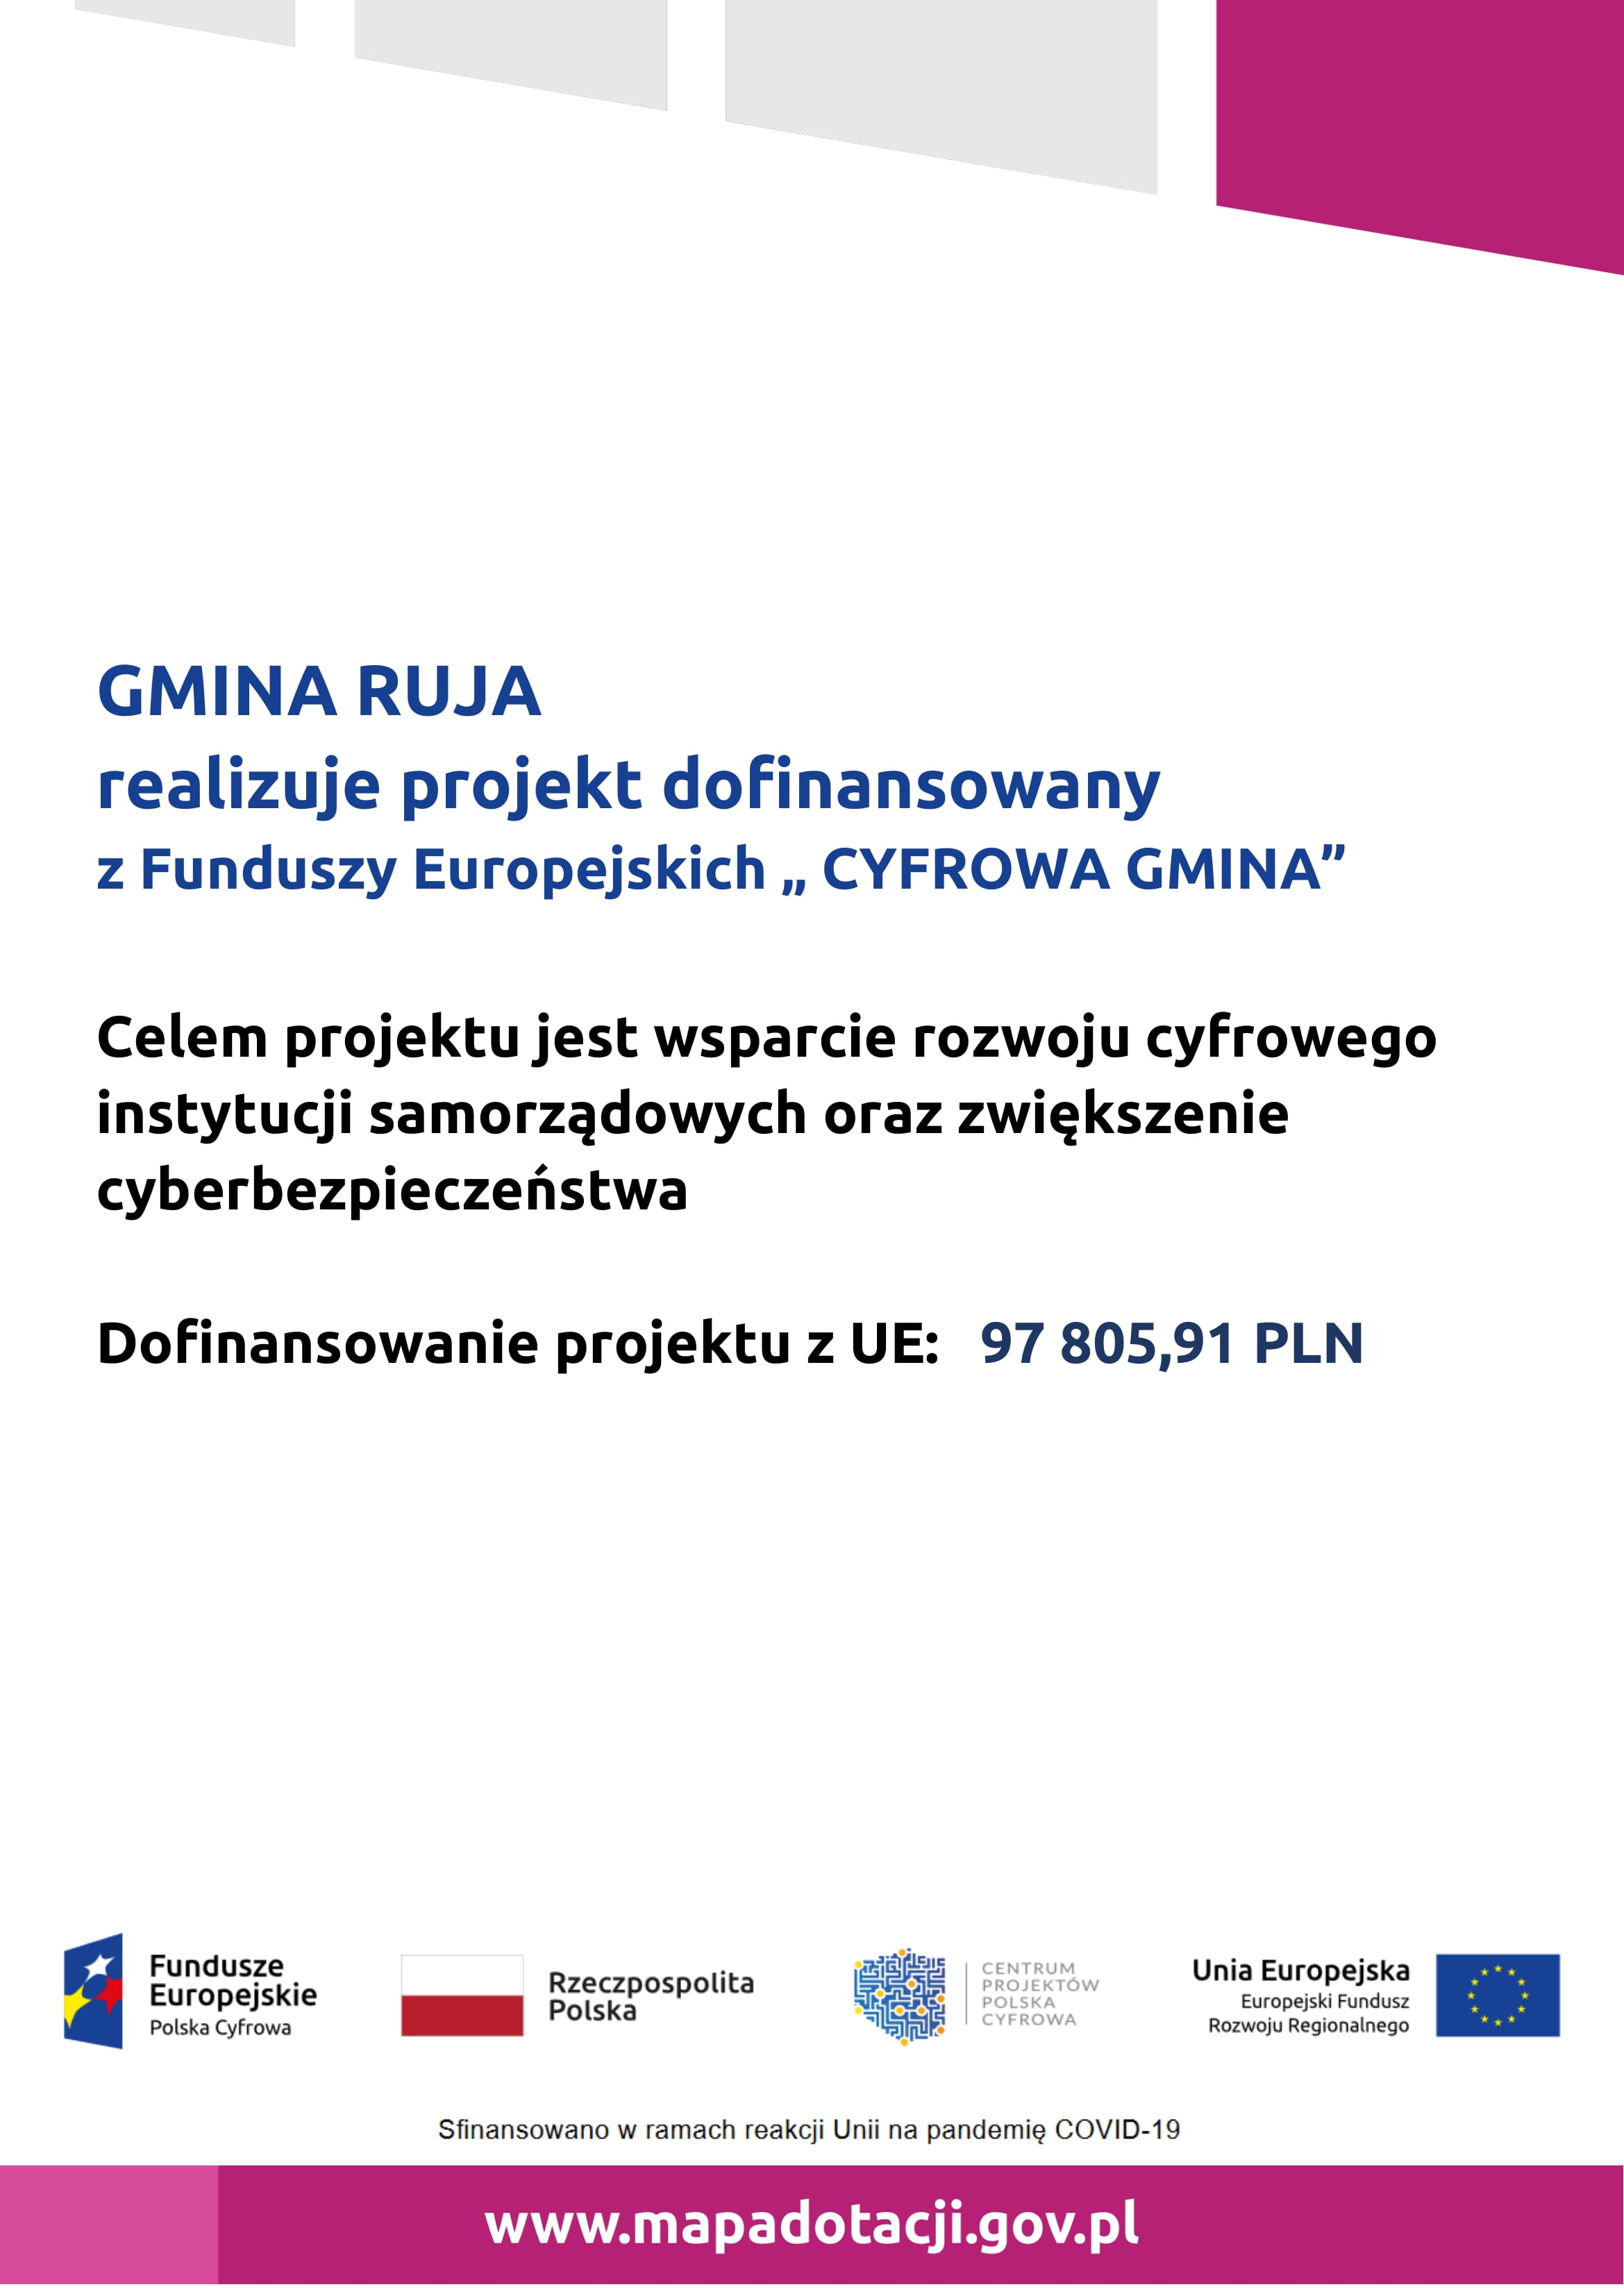 Gmina Ruja realizuje projekt dofinansowany z Funduszy Europejskich "CYFROWA GMINA"